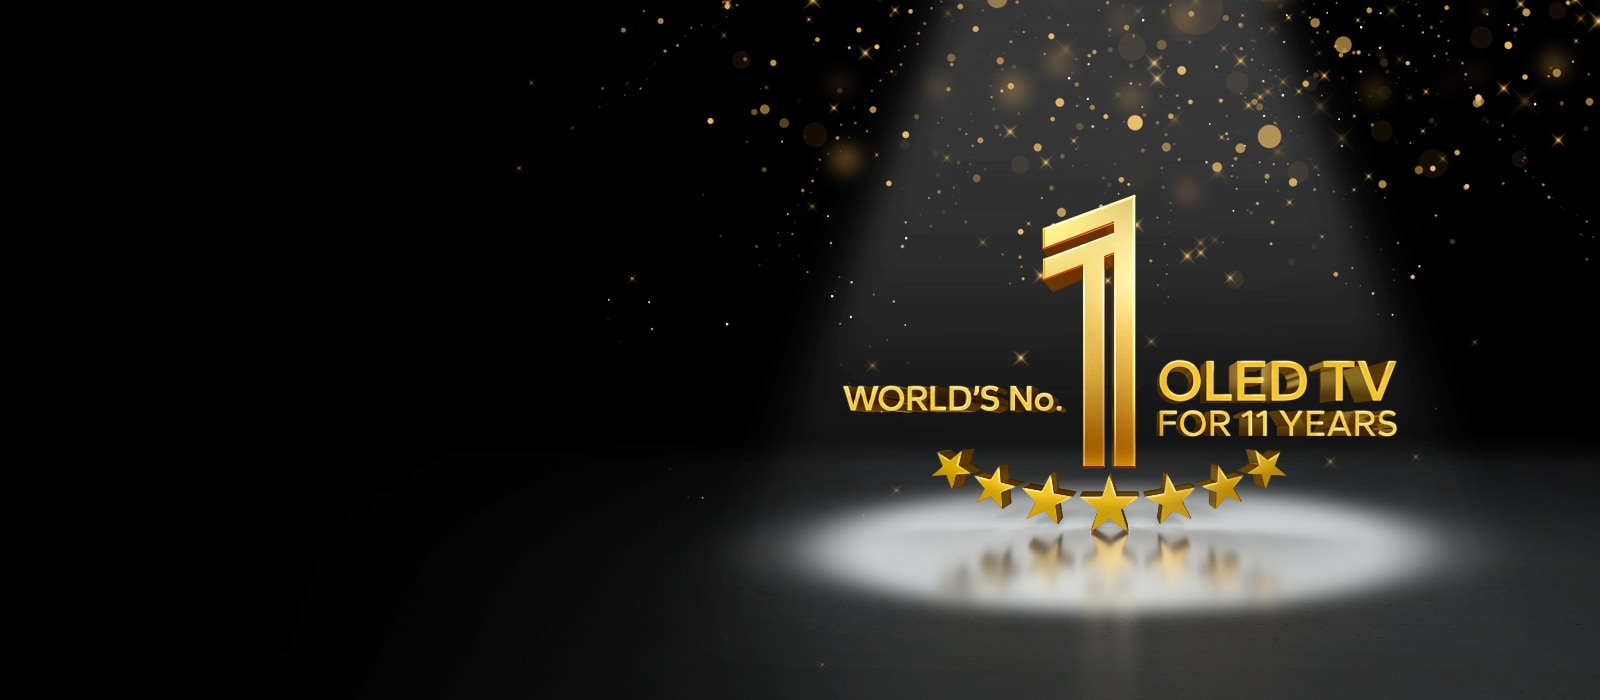 Ein goldenes Emblem der weltweiten Nummer 1 unter den OLED TVs seit 11 Jahren vor einem schwarzen Hintergrund. Ein Lichtstrahl leuchtet auf das Emblem, und goldene abstrakte Sterne füllen den Himmel darüber.